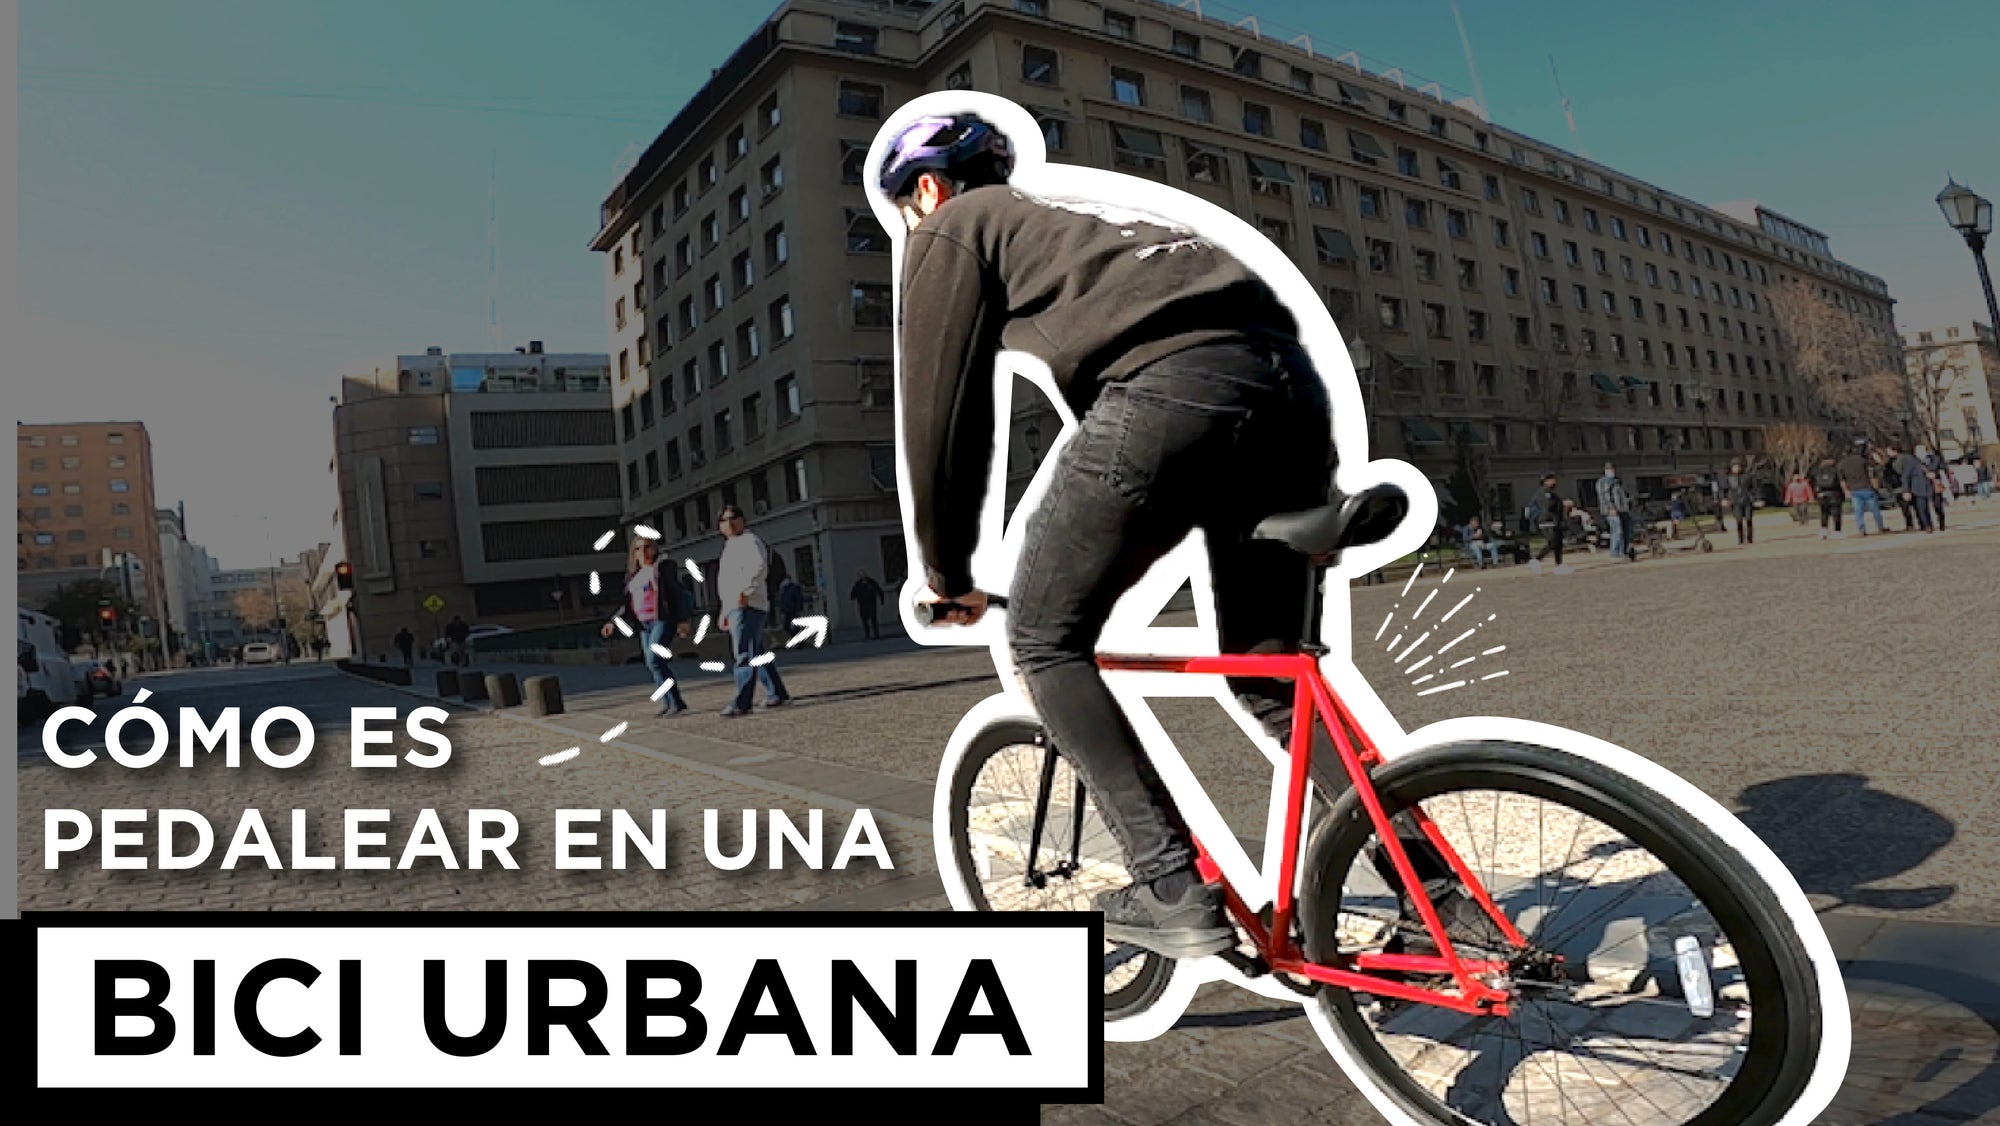 [Video] Probamos nuestra bicicleta urbana en las calles de Santiago